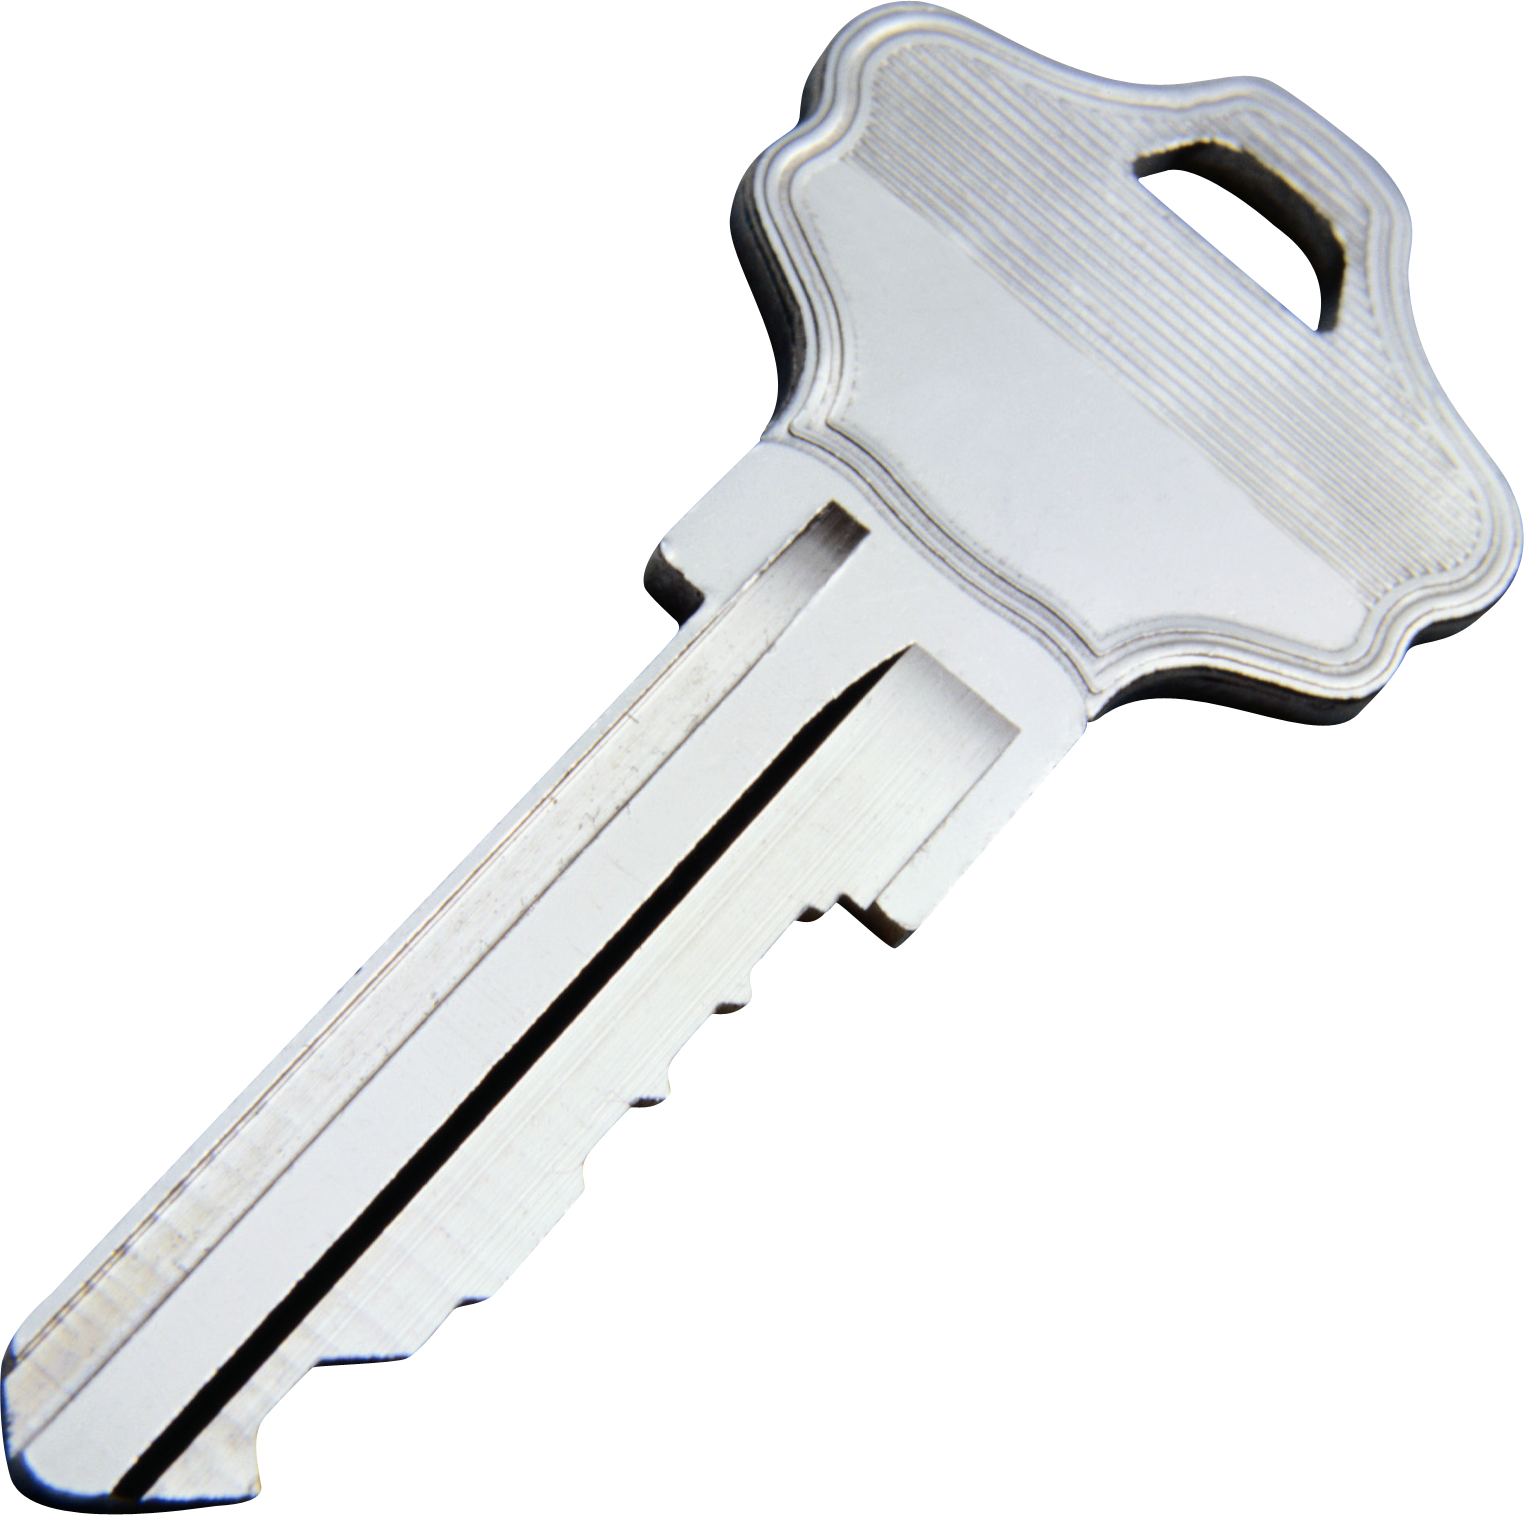 keys PNG image